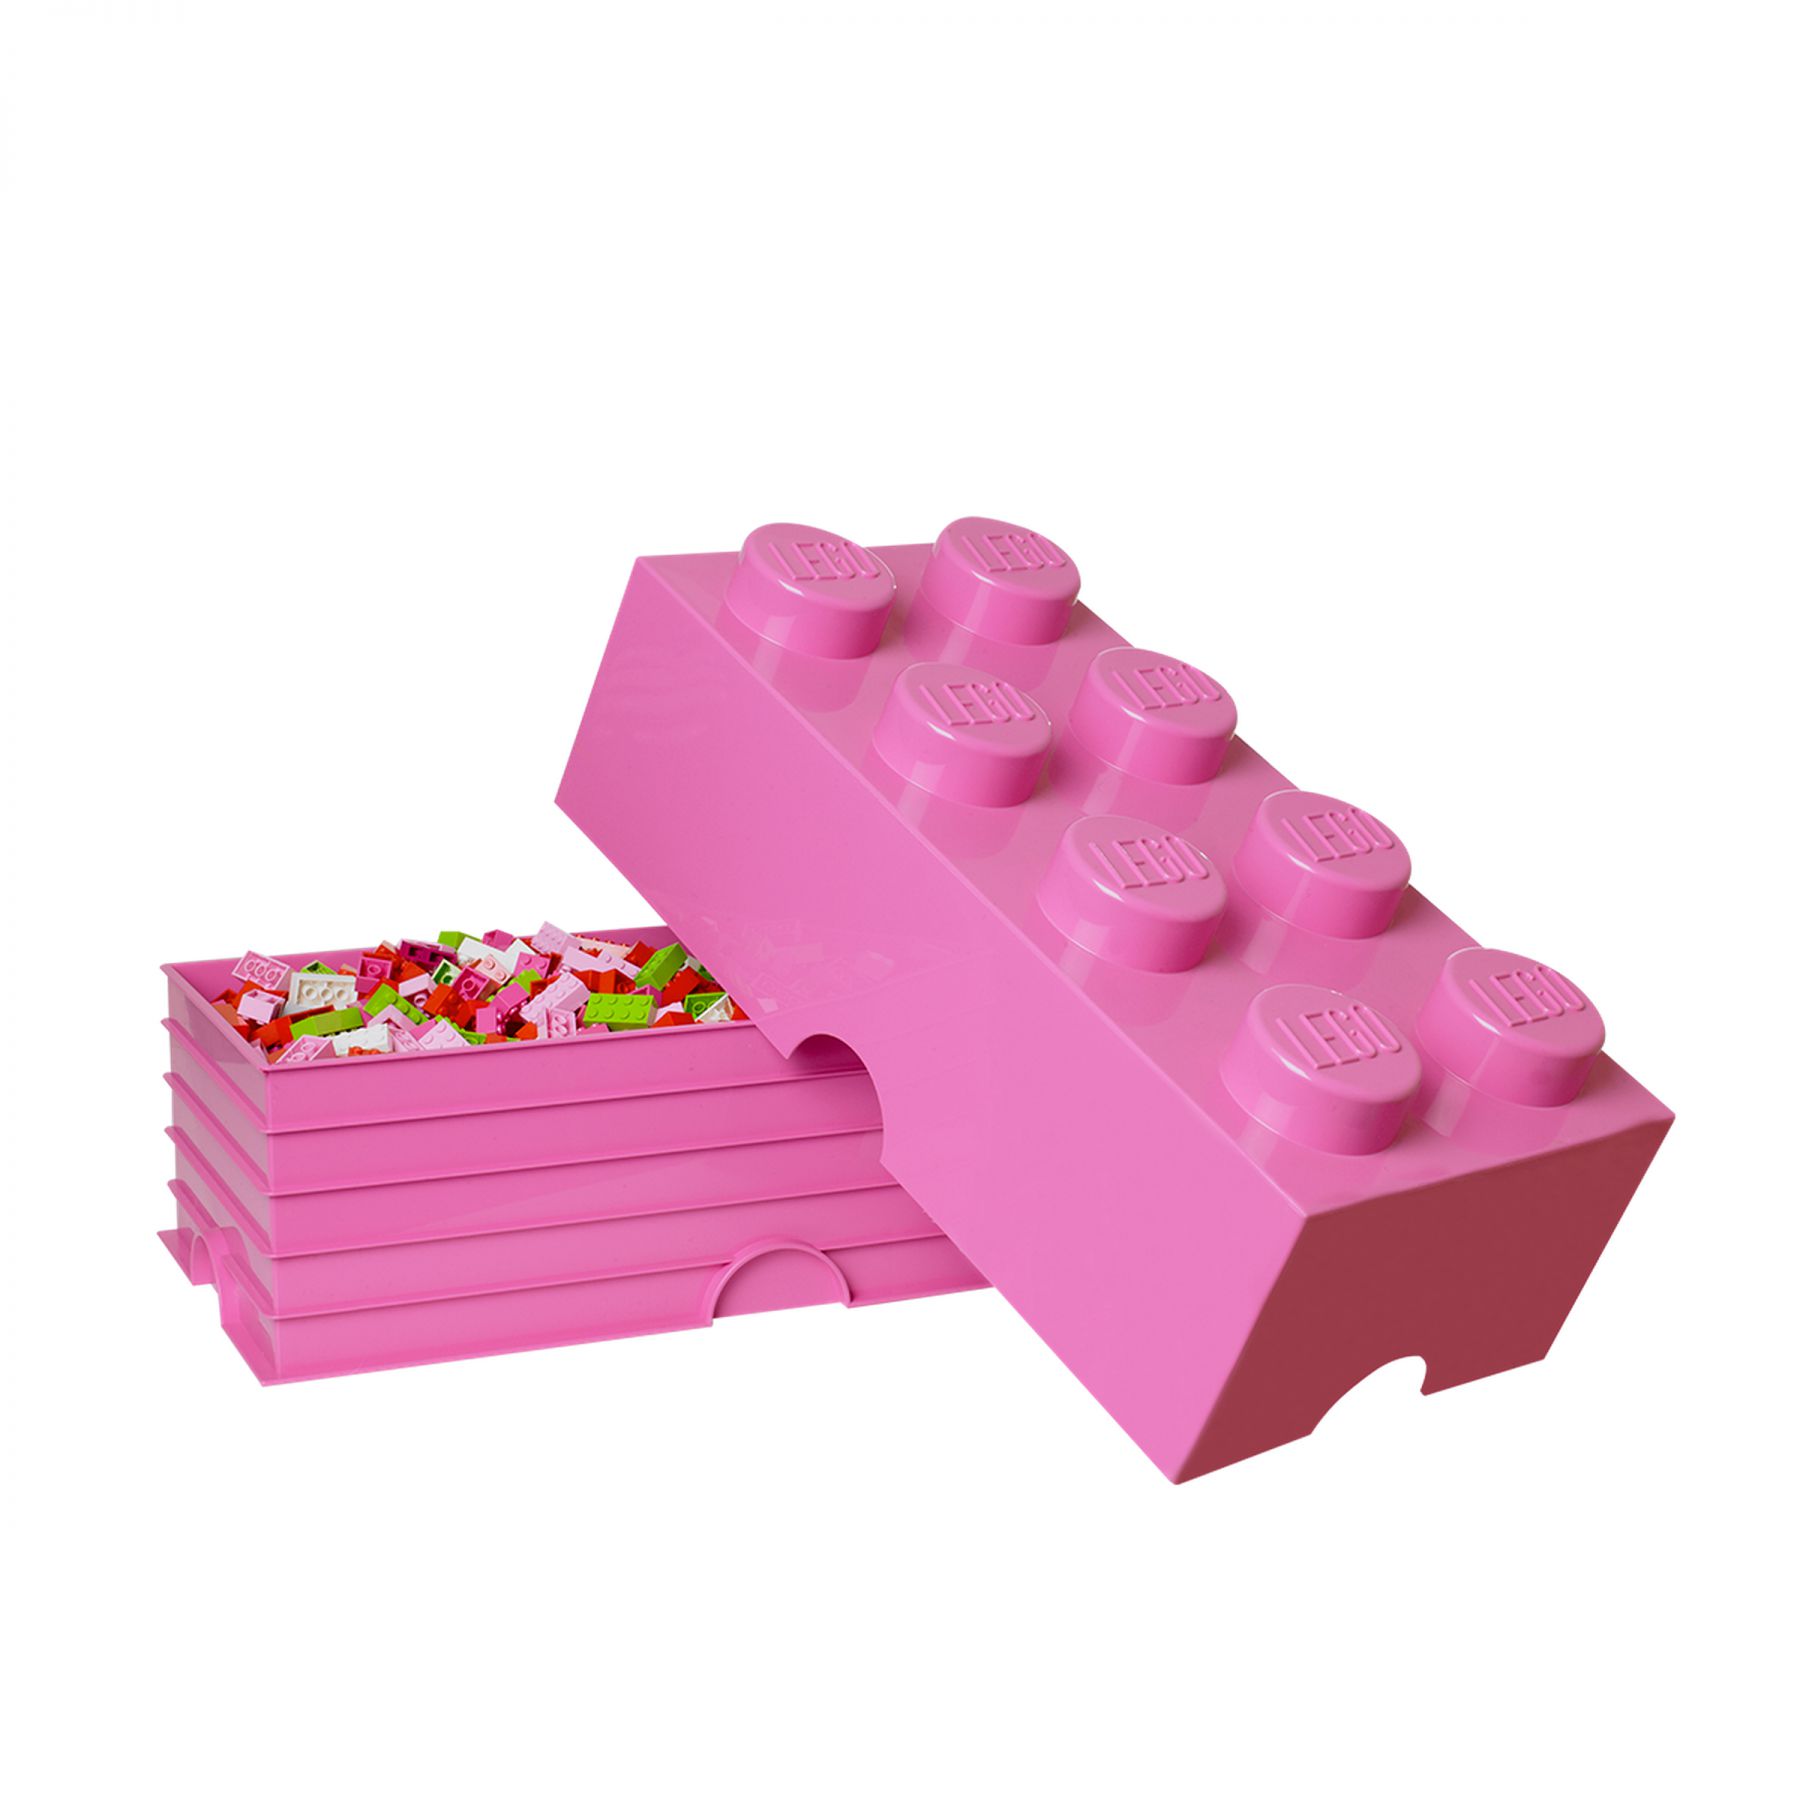 LEGO Gear 5005027 Lila LEGO® Aufbewahrungsstein mit 8 Noppen LEGO_5005027_alt1.jpg